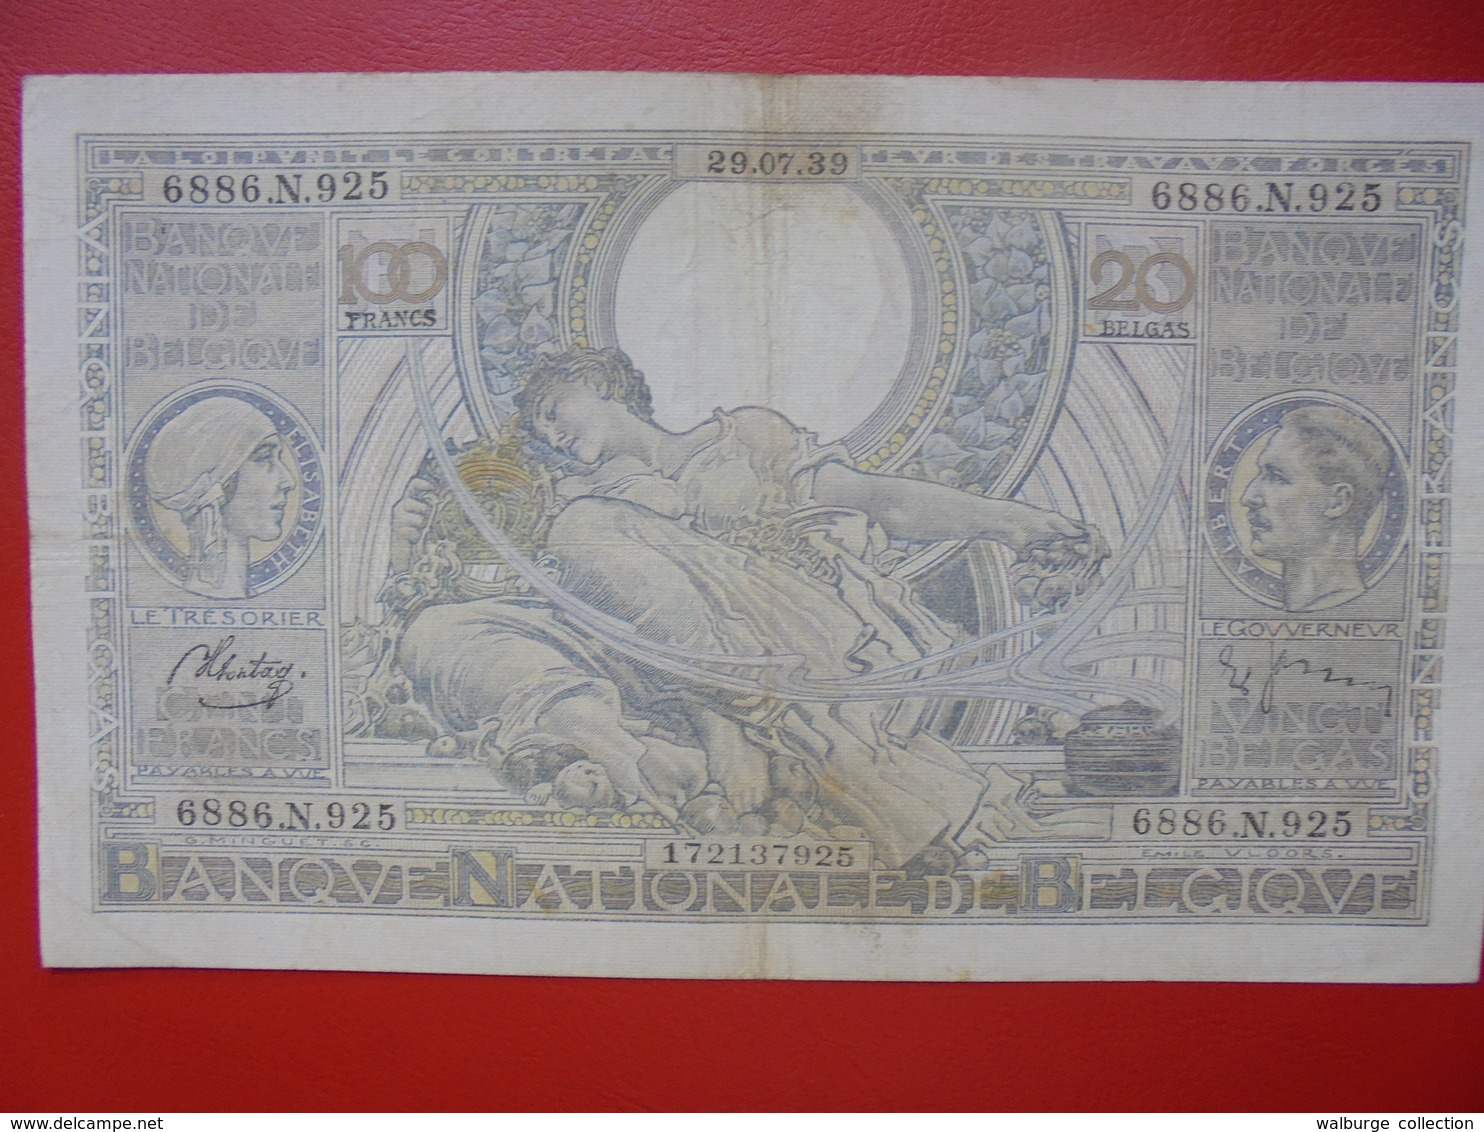 BELGIQUE 100 FRANCS 29-7-39 CIRCULER (F.1) - 100 Francs & 100 Francs-20 Belgas